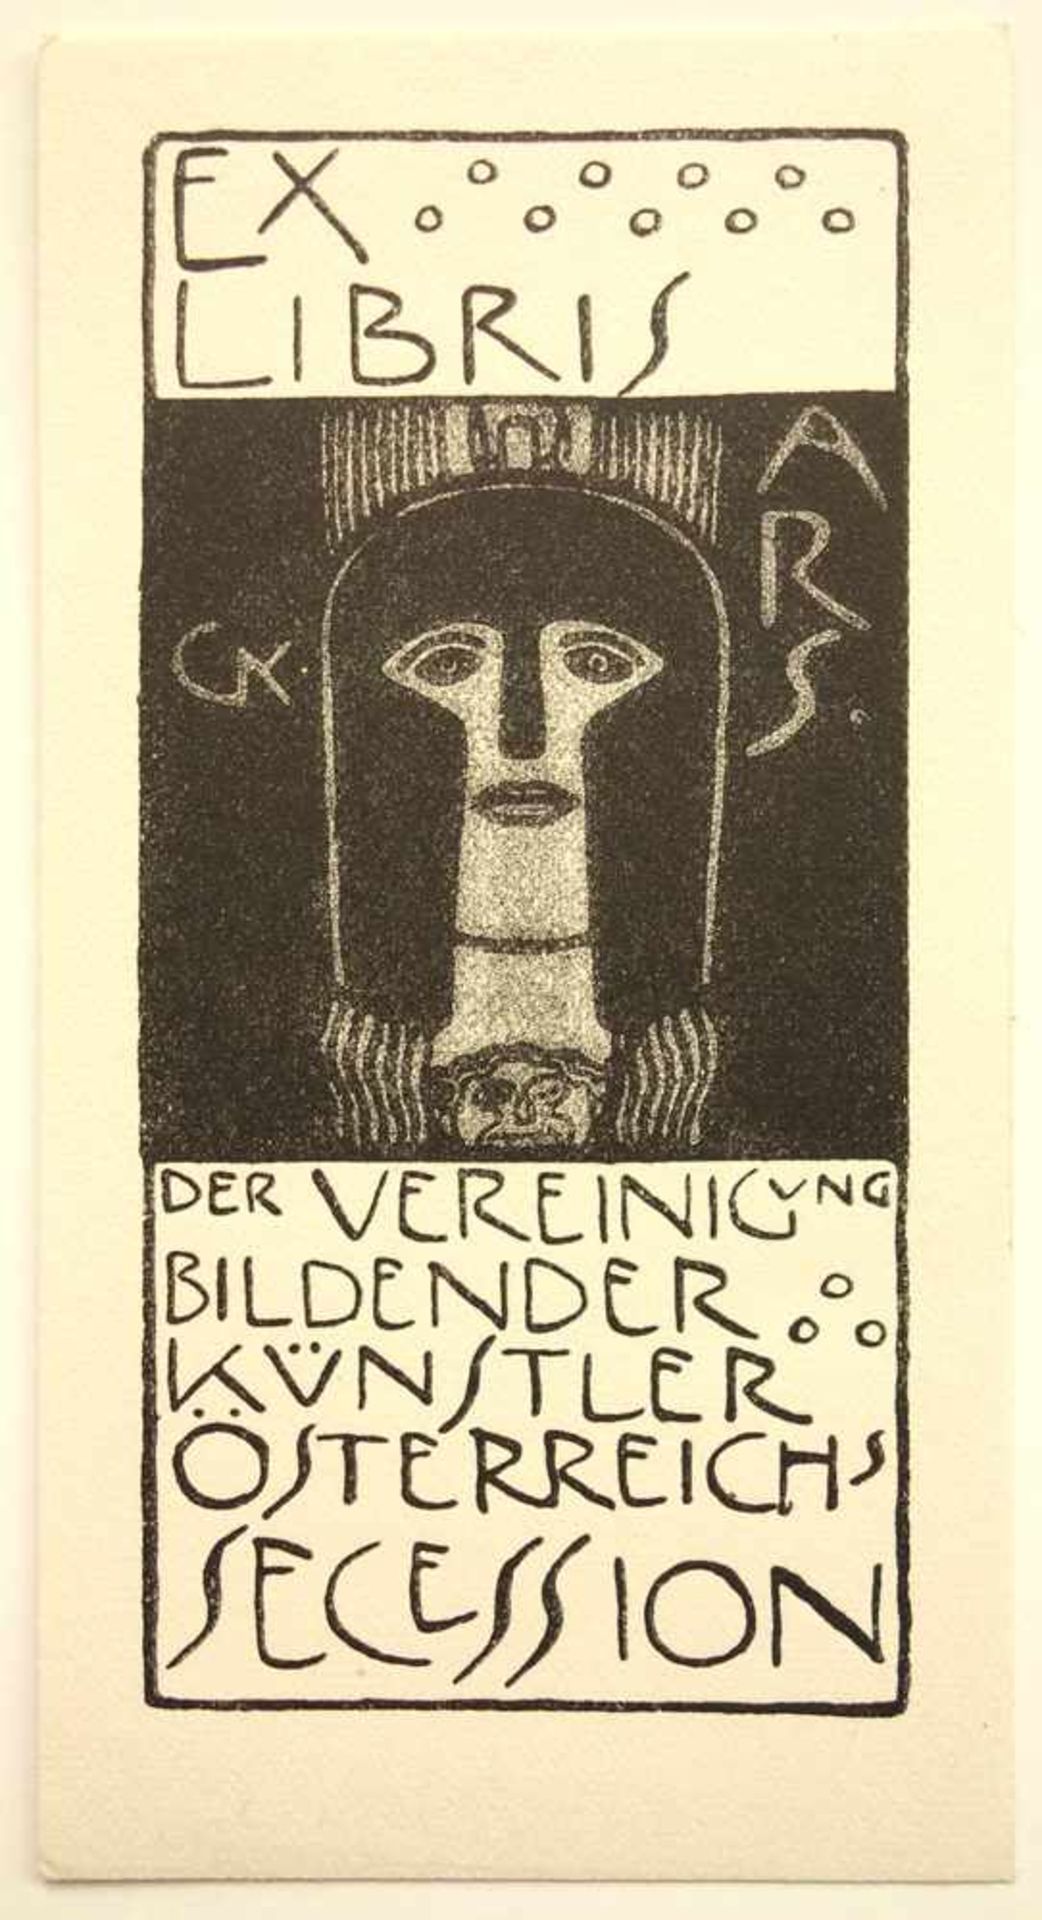 Gustav Klimt (1862-1918, Wien) "Ex libris der Vereinigung bildender Künstler Österreichs Secession",